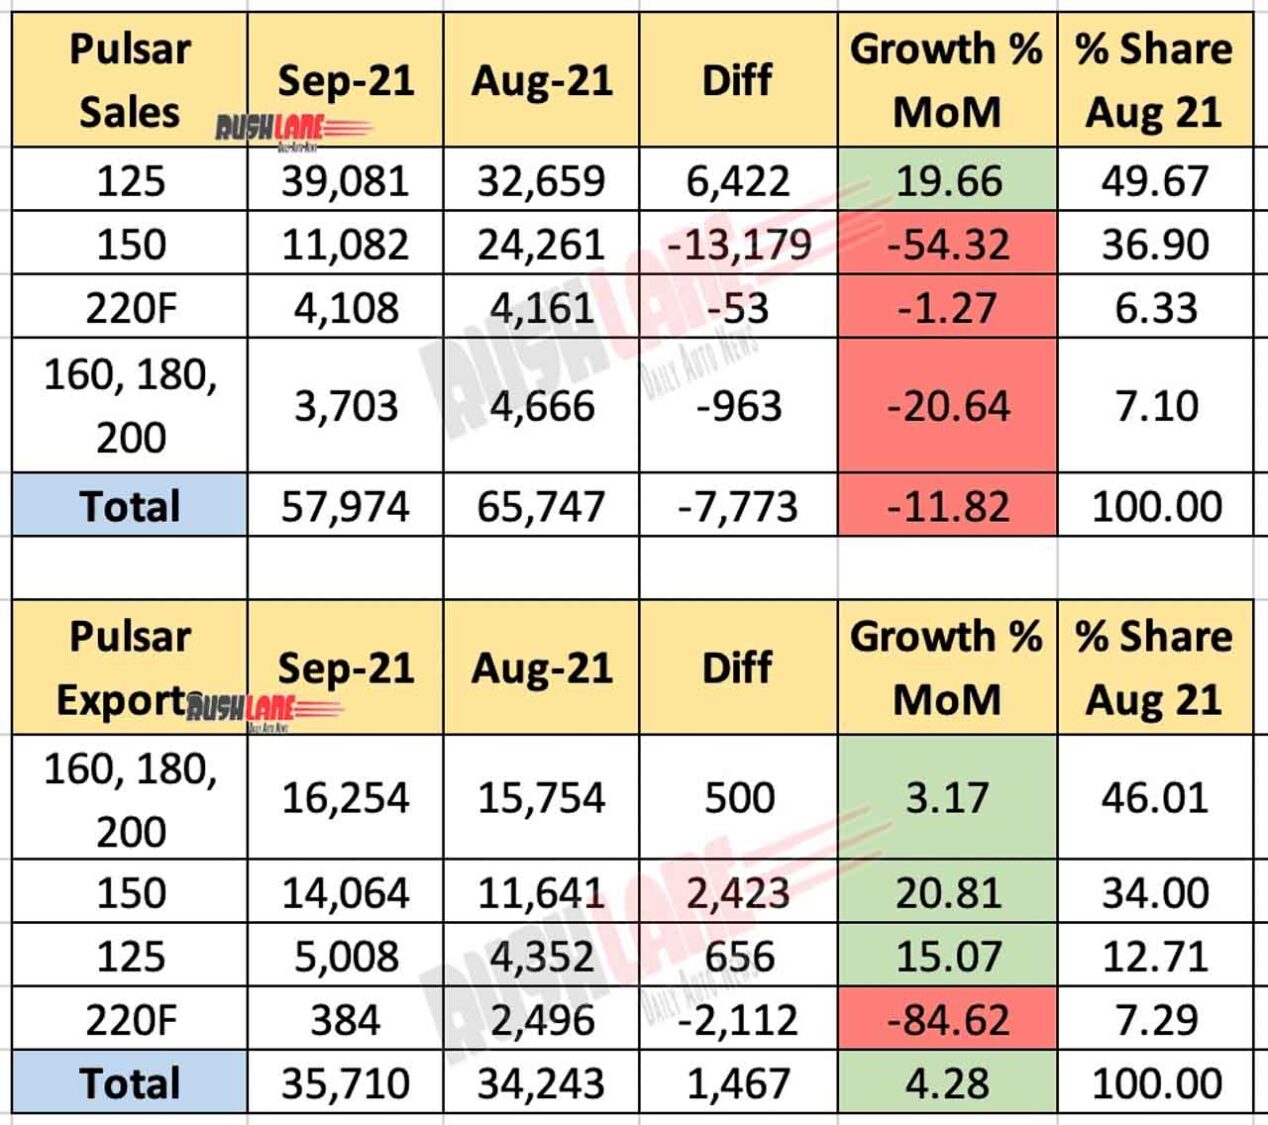 Bajaj Pulsar Sales Breakup Sep 2021 vs Aug 2021 (MoM)